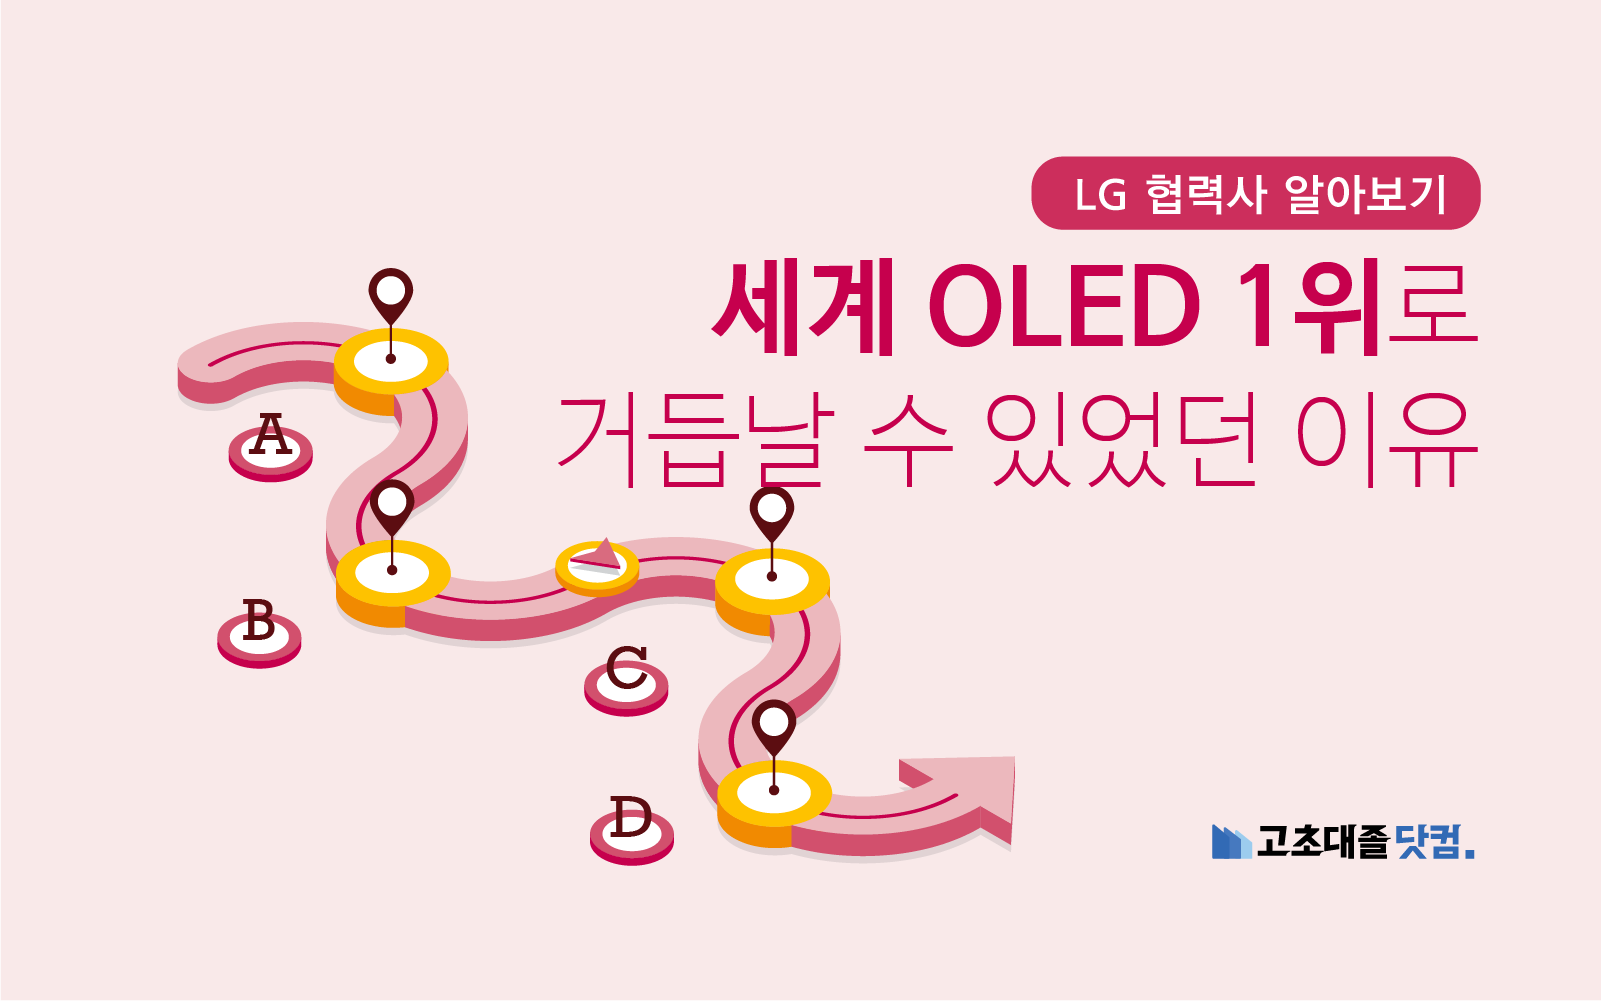 LG는 어떻게 OLED 세계 1위로 거듭날 수 있었을까?